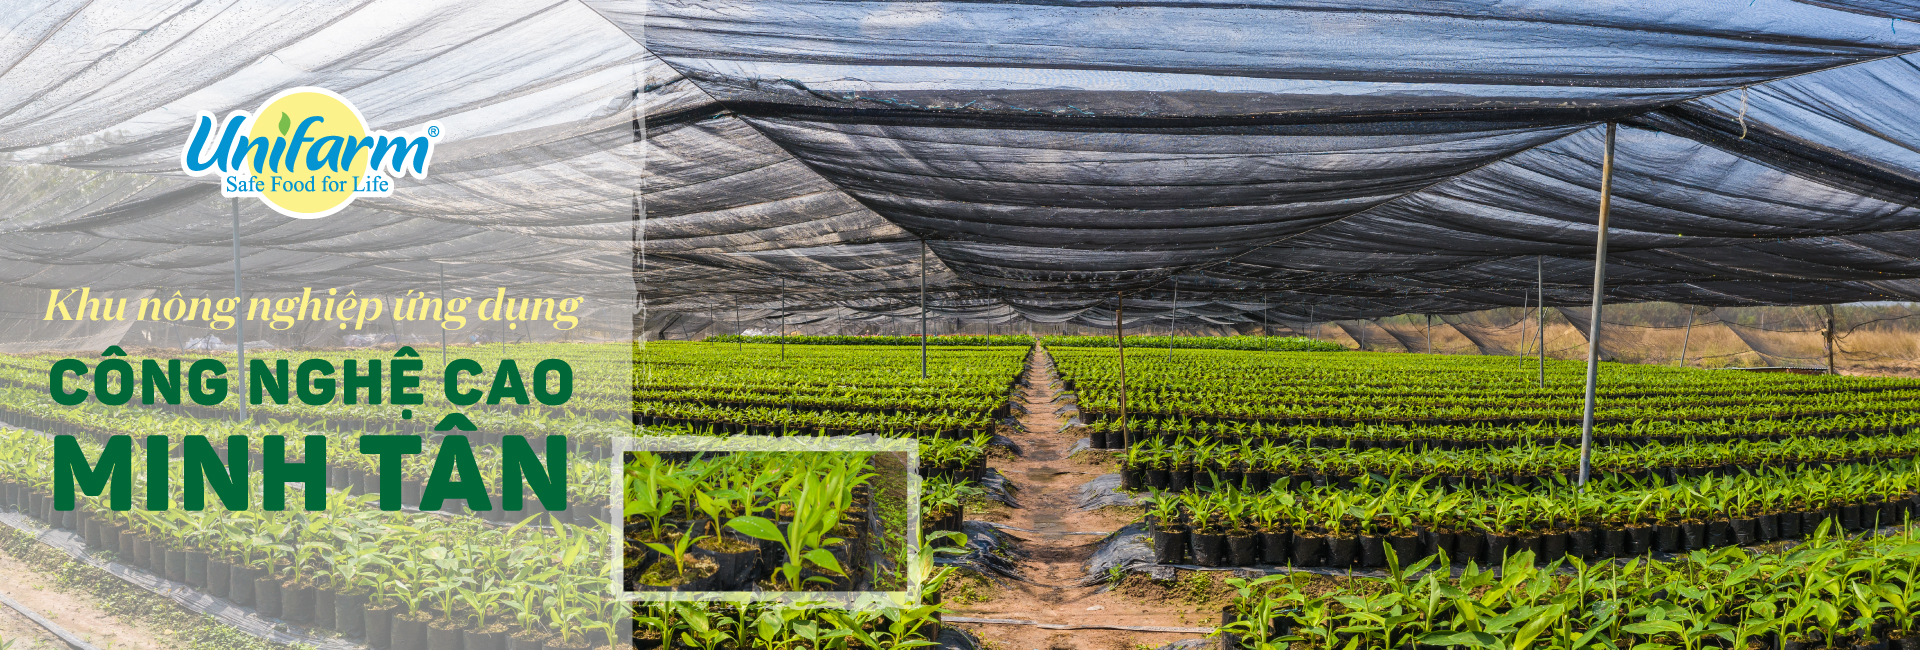 Vườn ươm khu nông nghiệp công nghệ cao Minh Tân